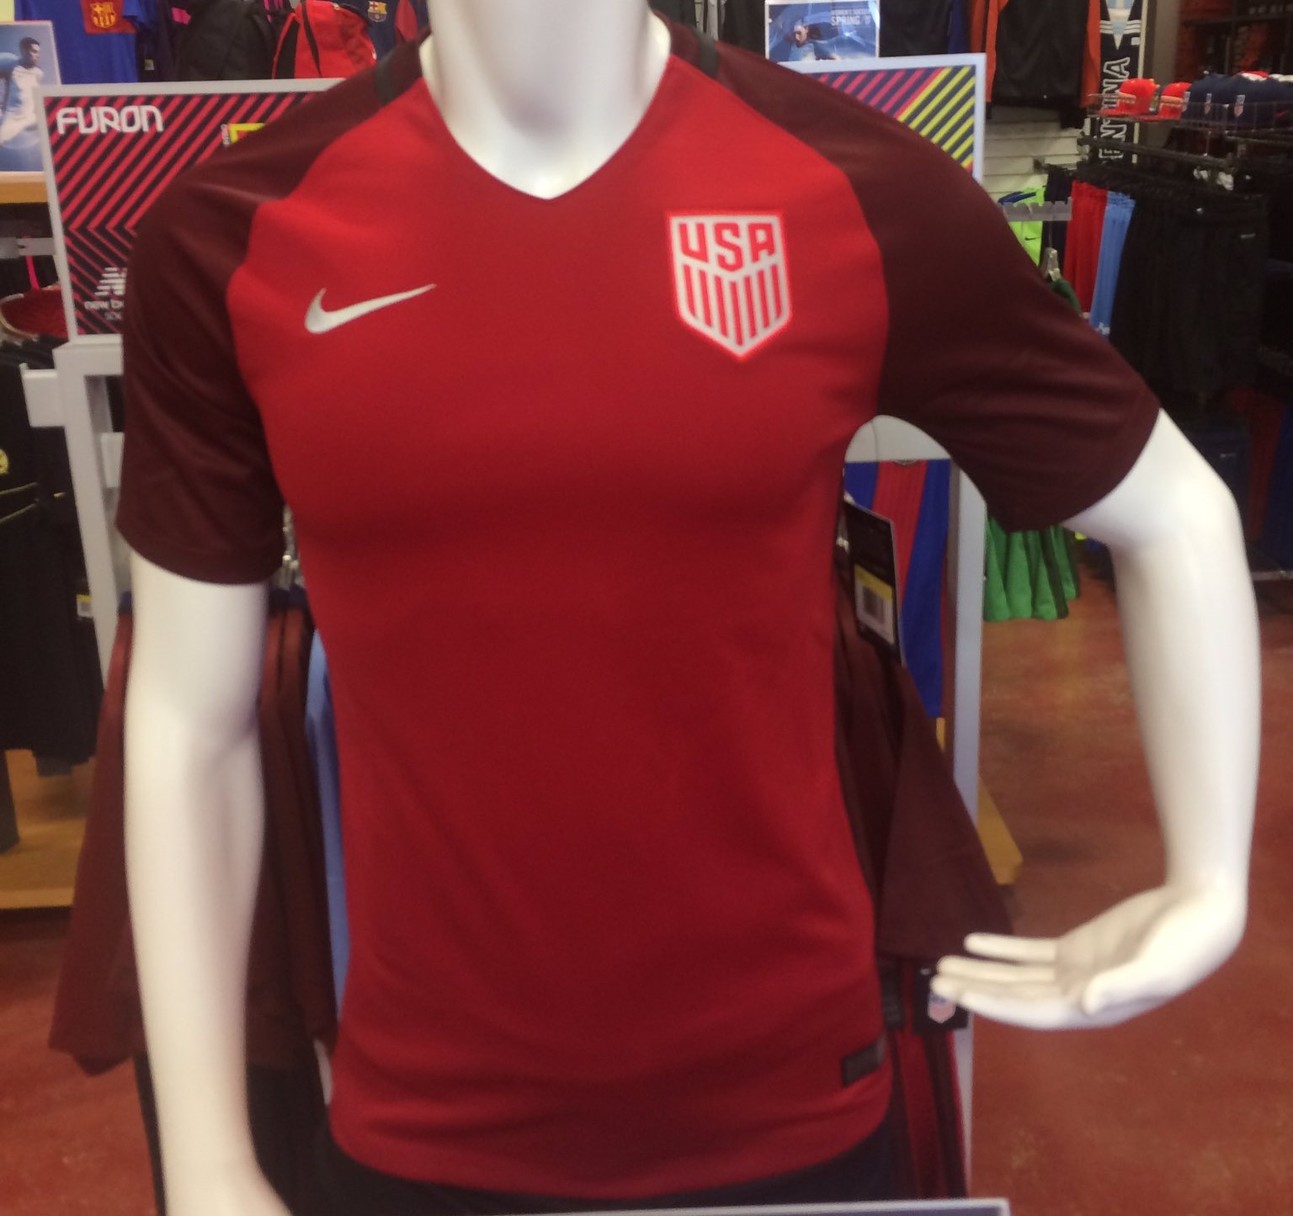 USA 2017 Nike Third Kit LEAKED